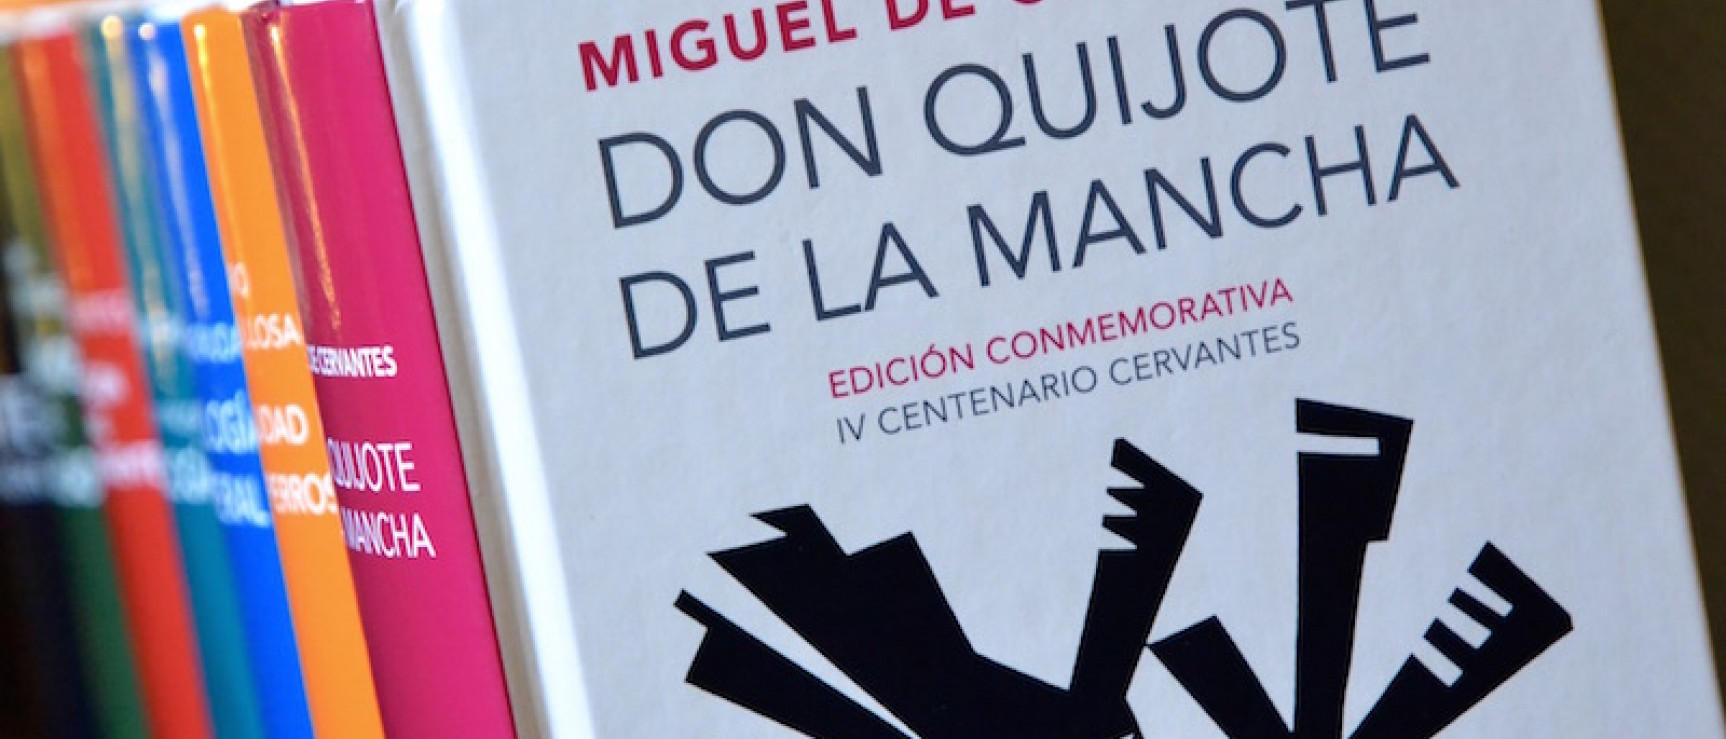 La obra se publica para conmemorar el cuarto centenario de Cervantes.